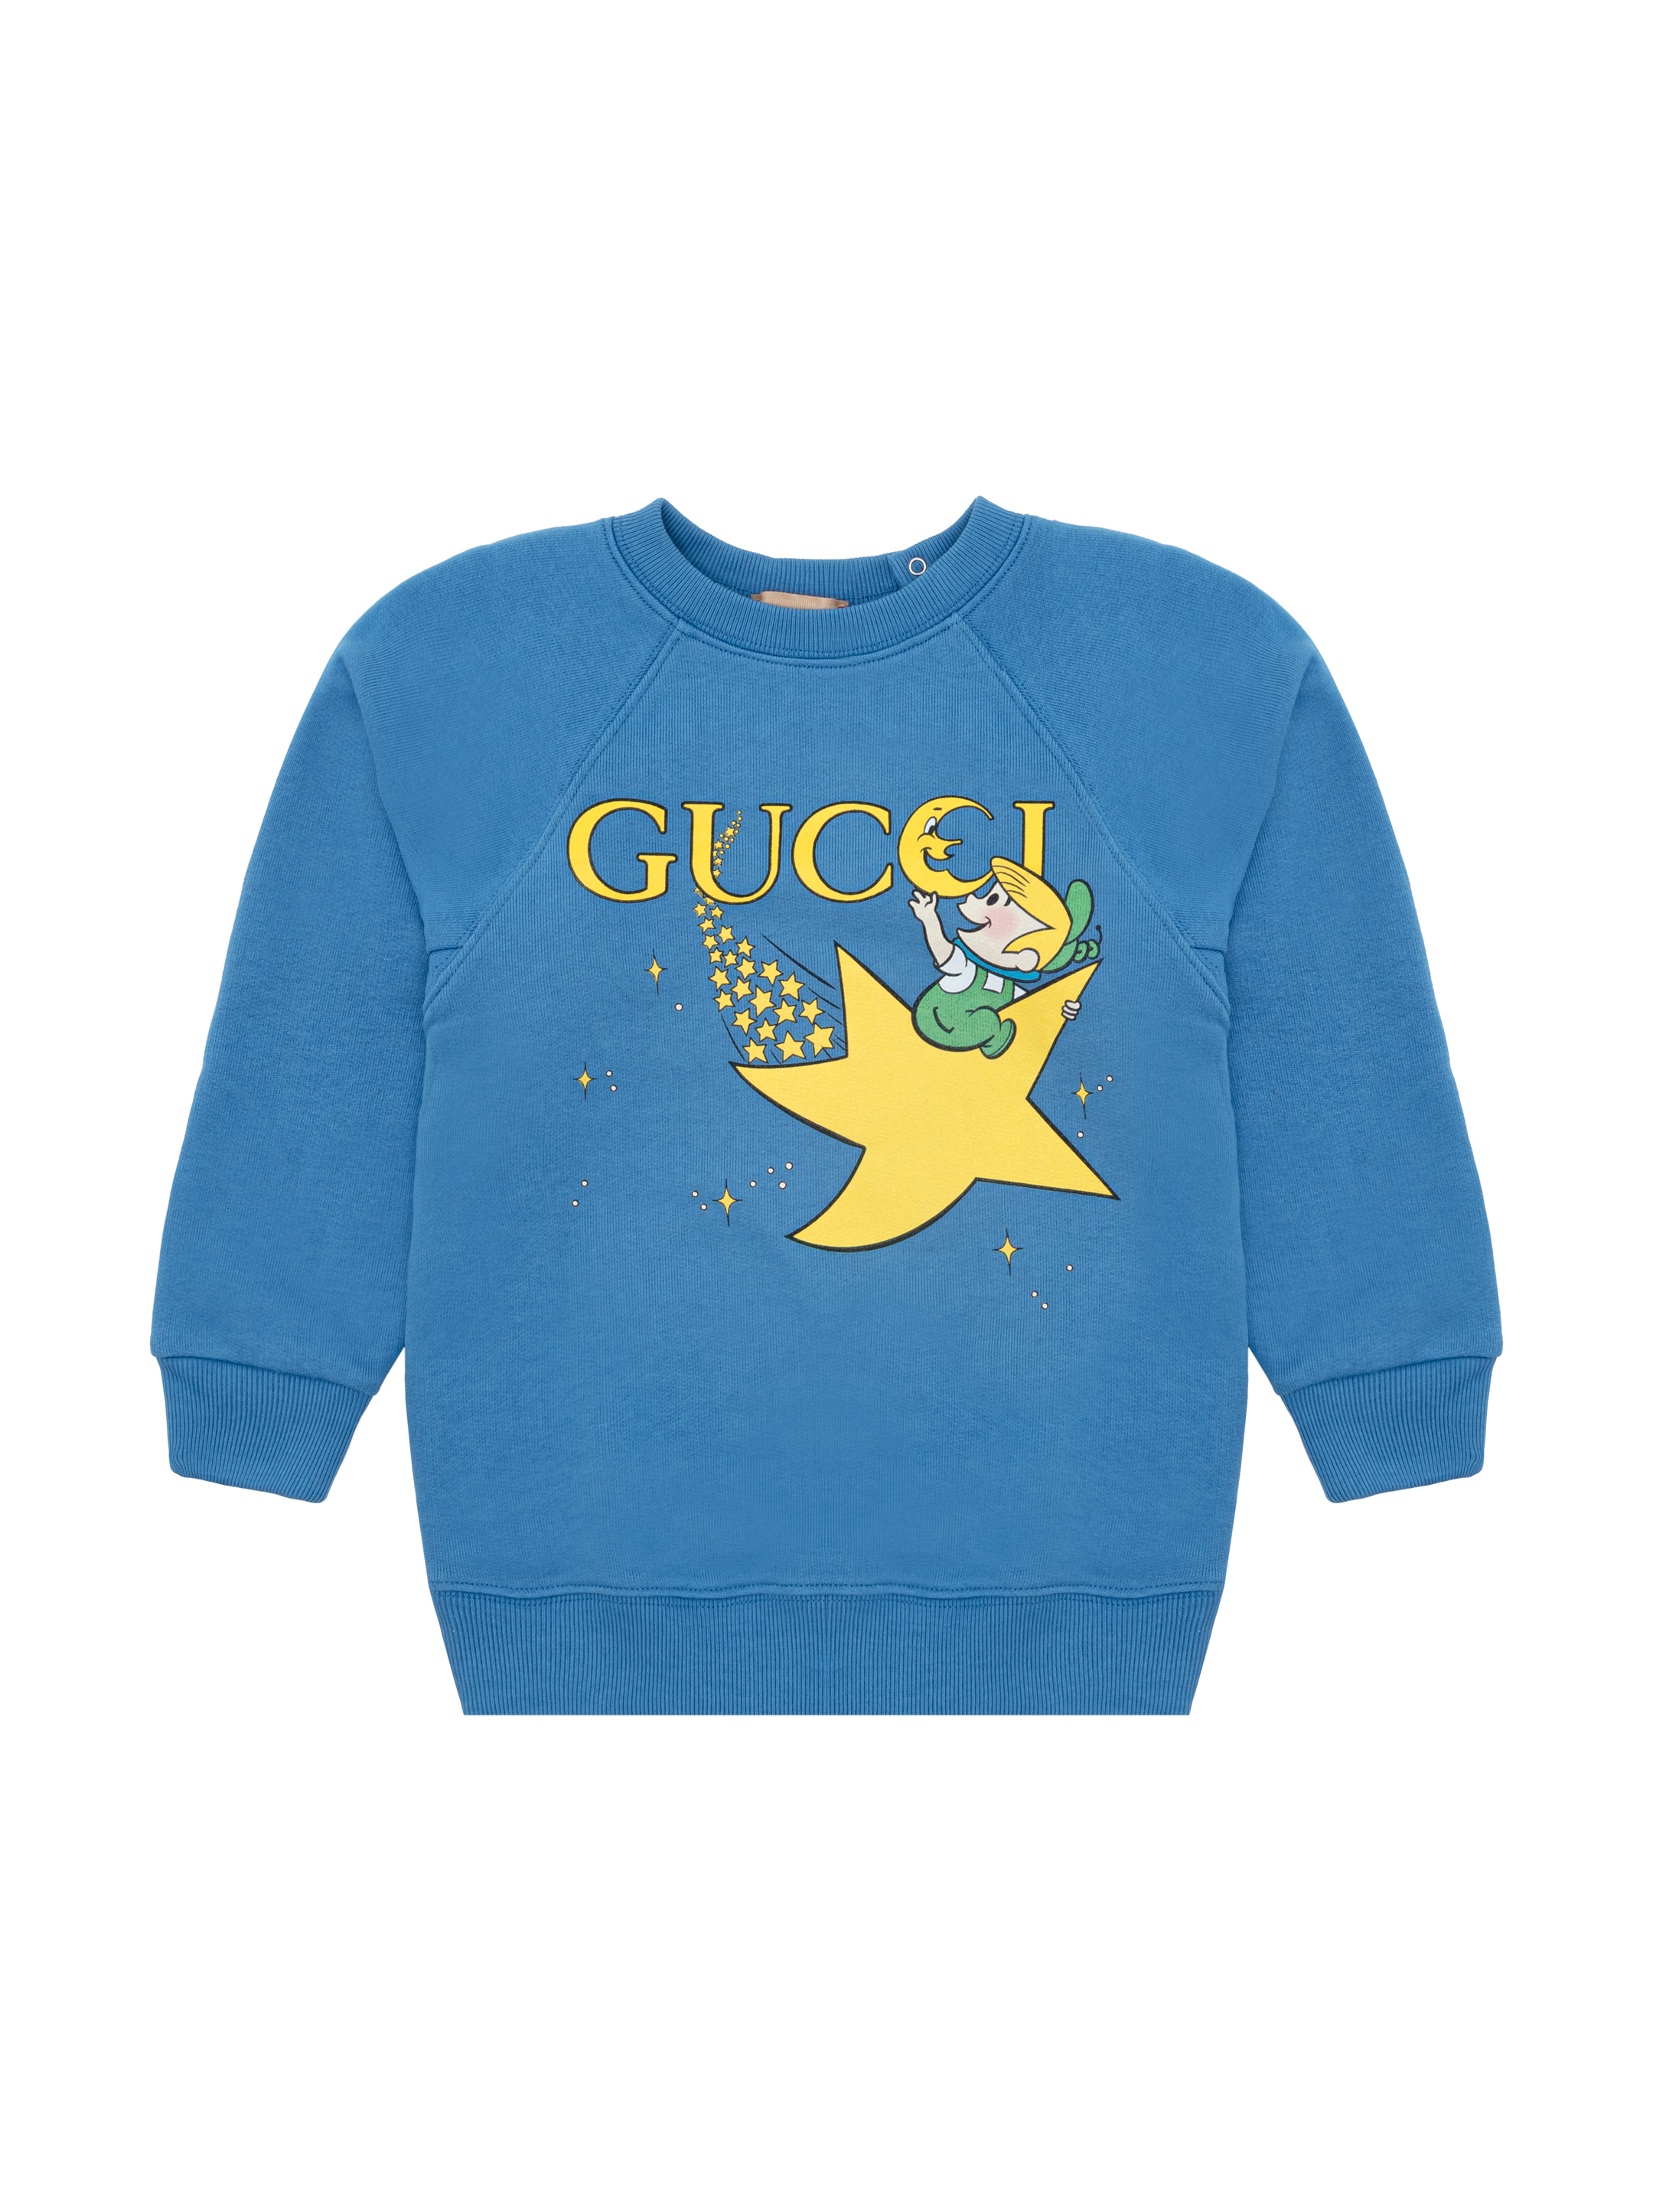 Gucci The Jetsons cotton sweatshirt для новорождённых - buy for